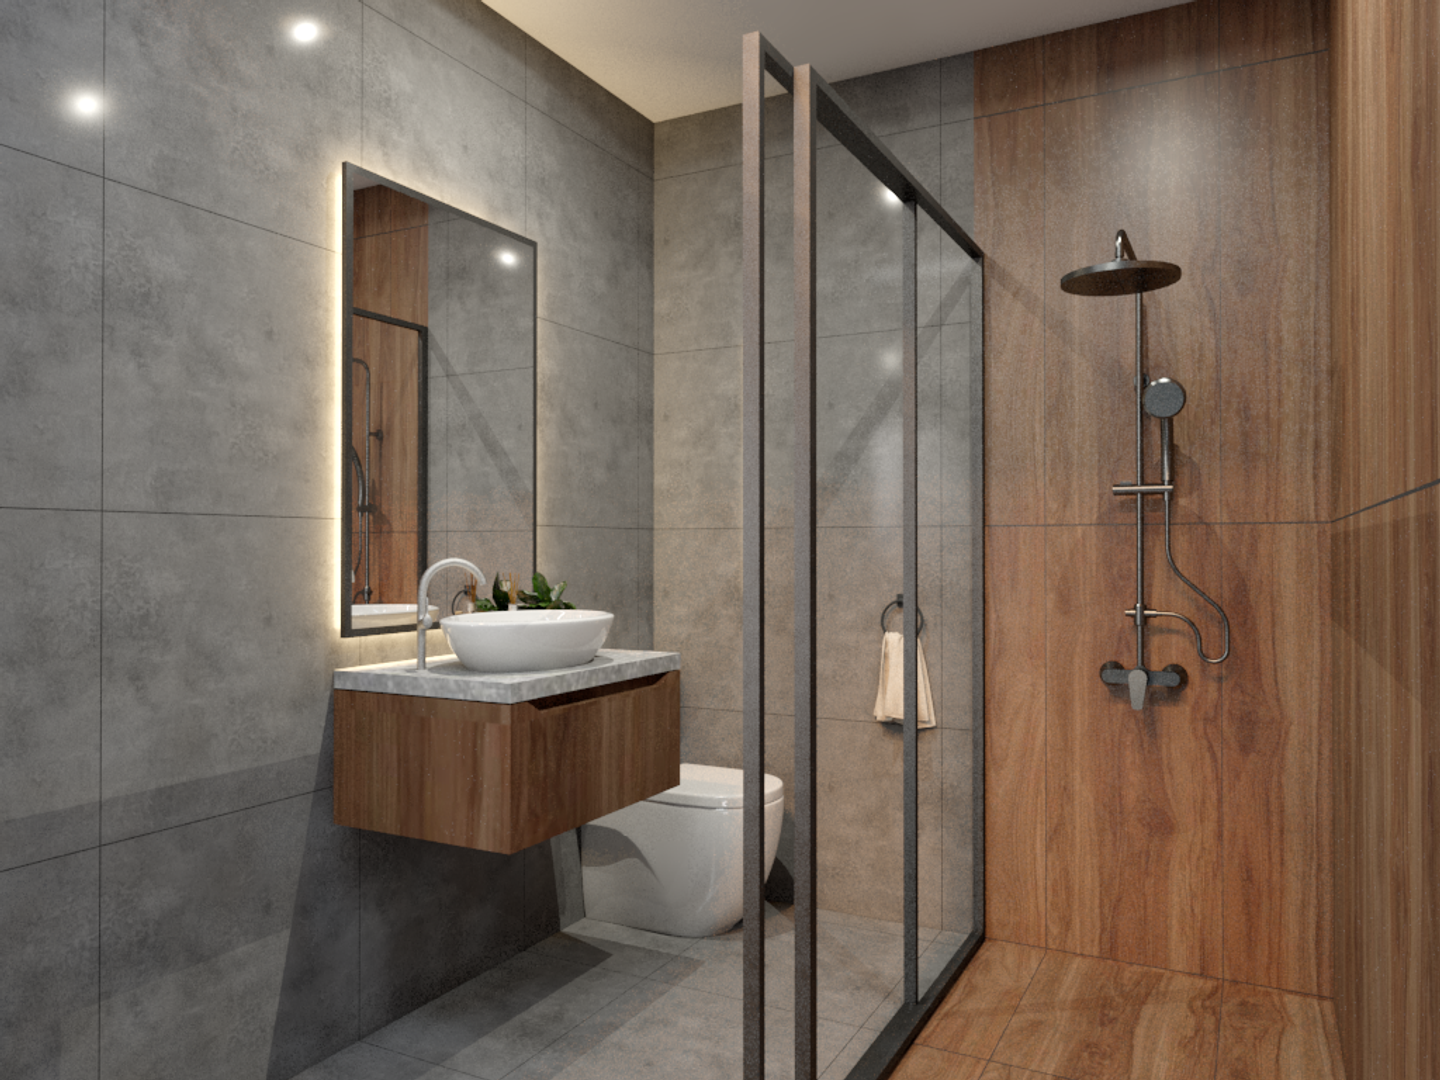 Rectangular Mirror Multi-Functional Spacious Bathroom Design - Livspace